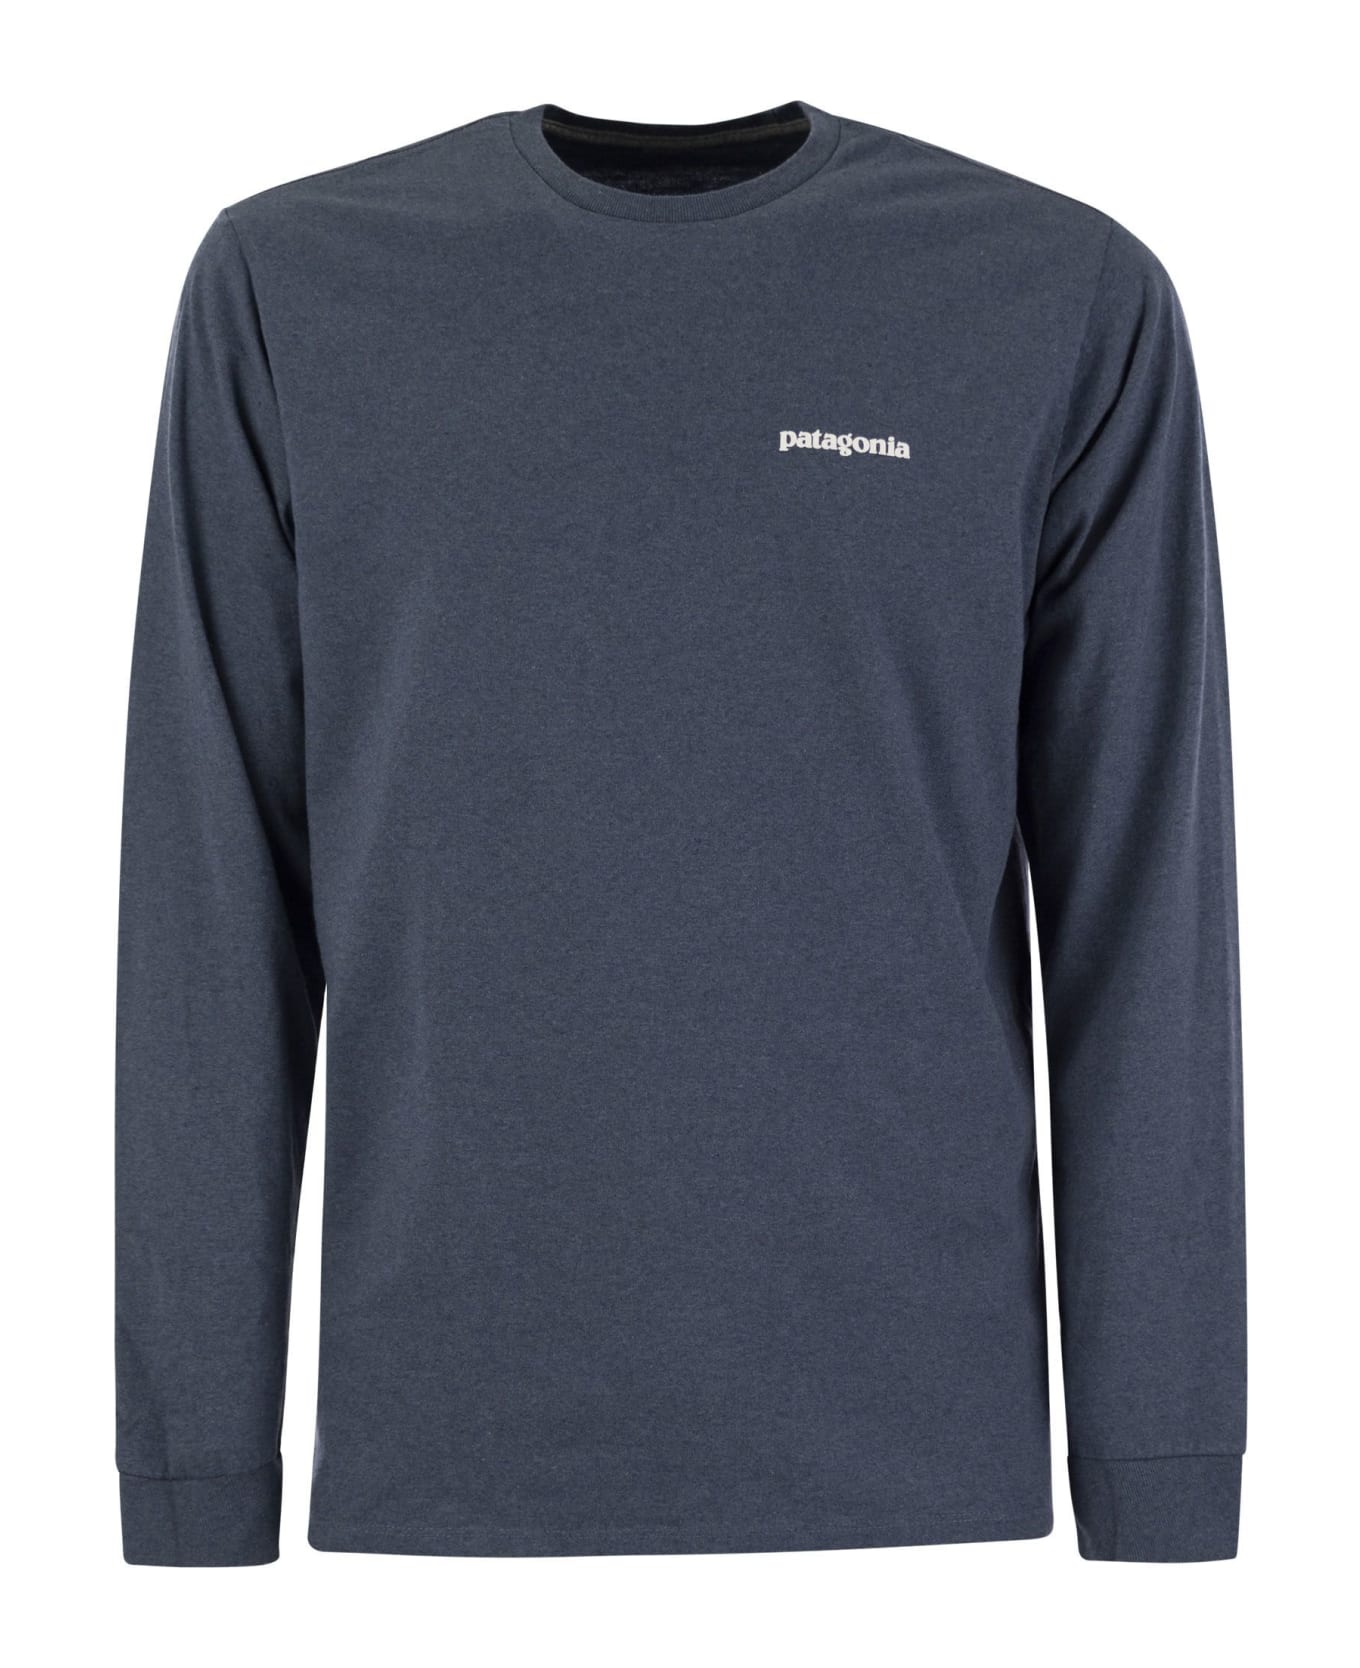 Patagonia T-shirt With Logo Long Sleeves - Avio シャツ